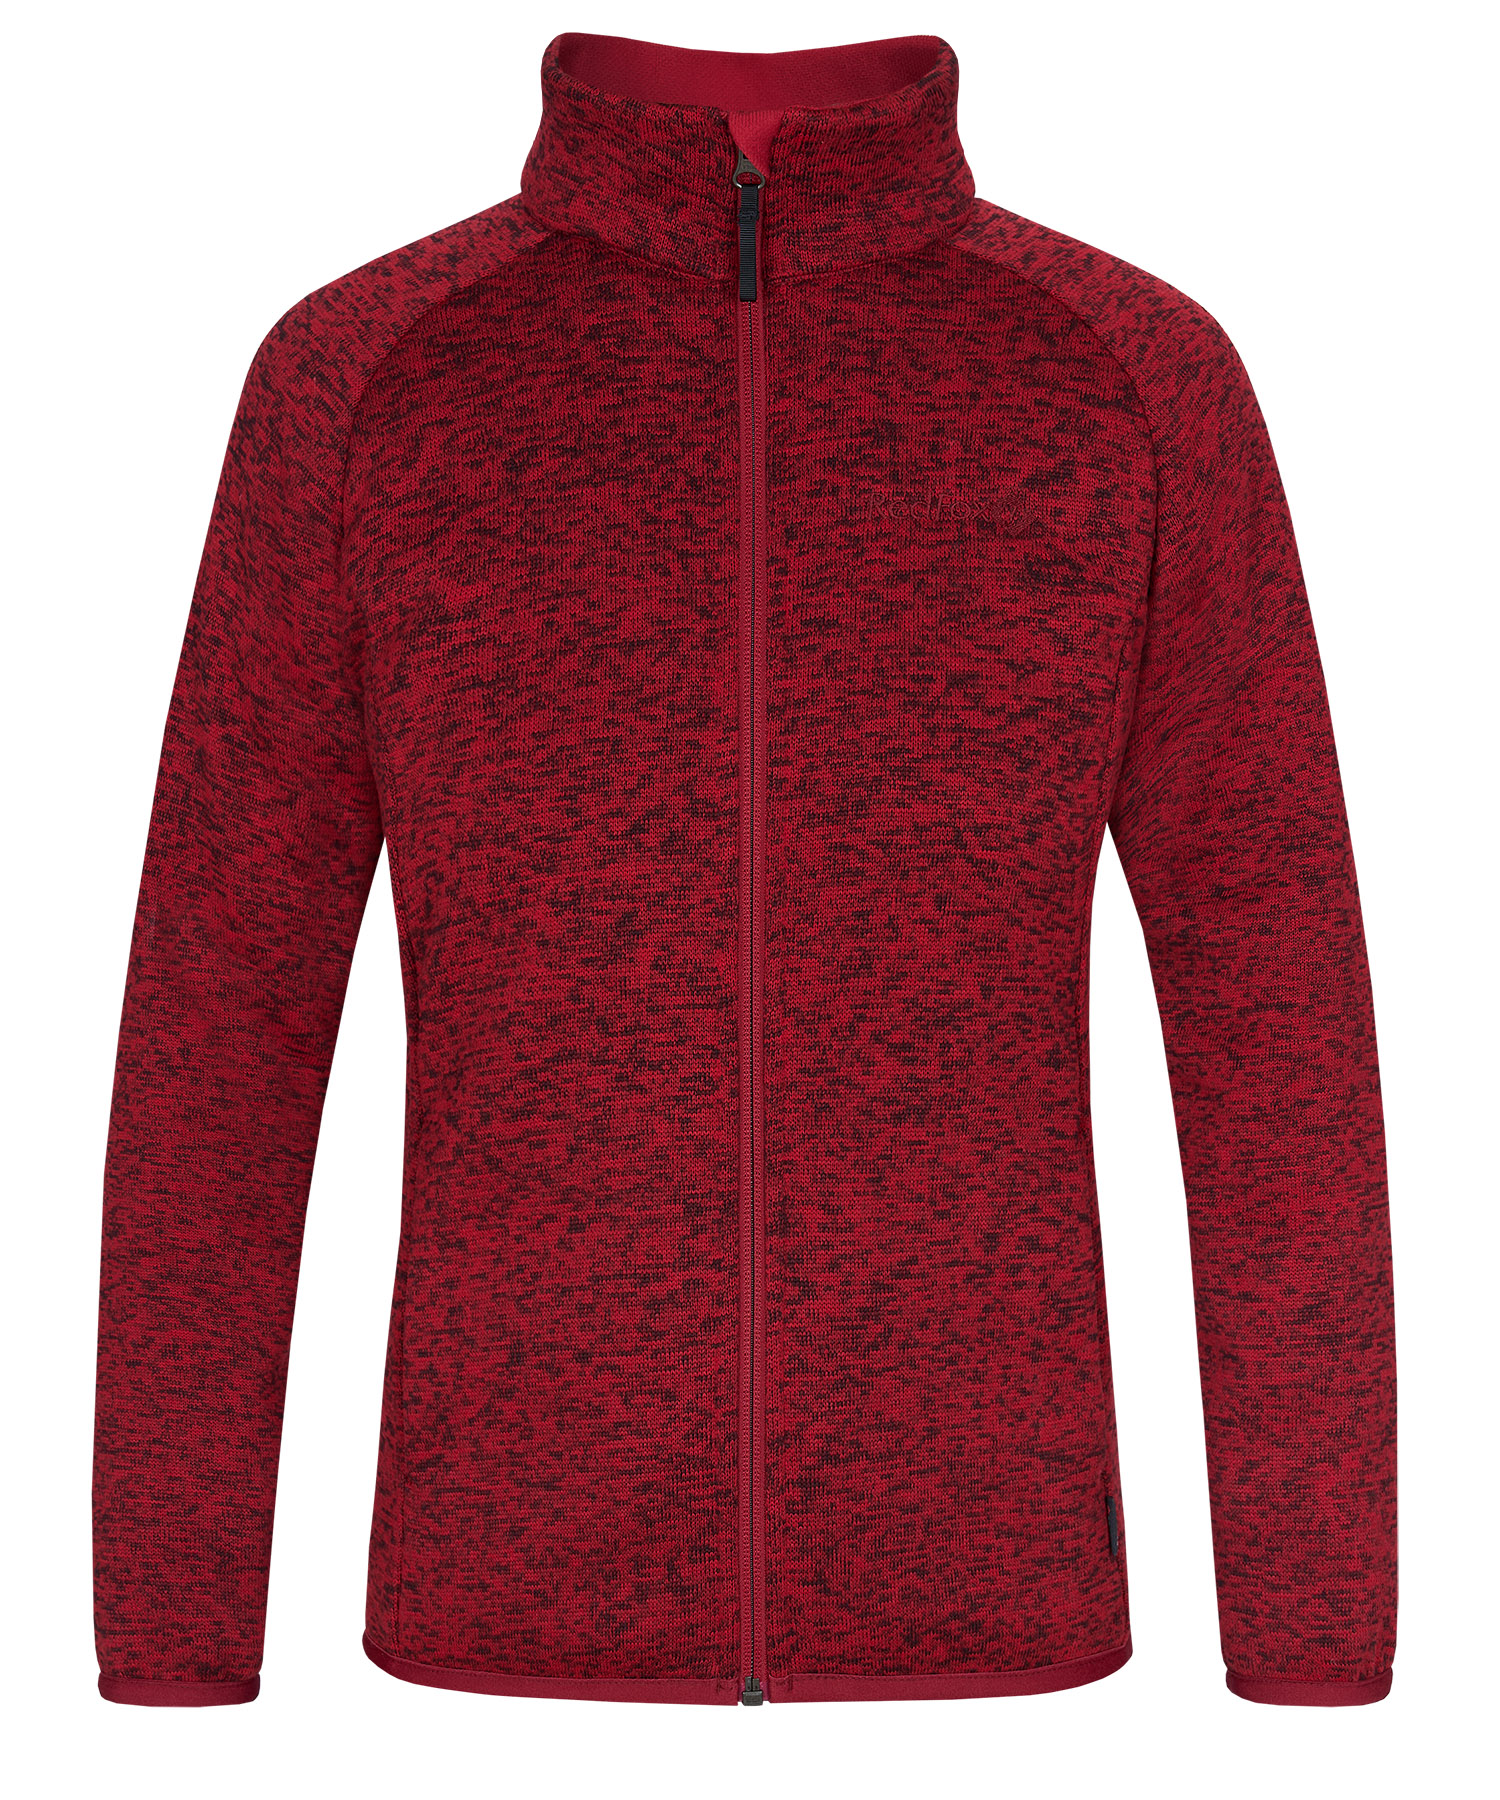 Куртка Sherpa Женская Red Fox, цвет темно-красный, размер 46 - фото 1